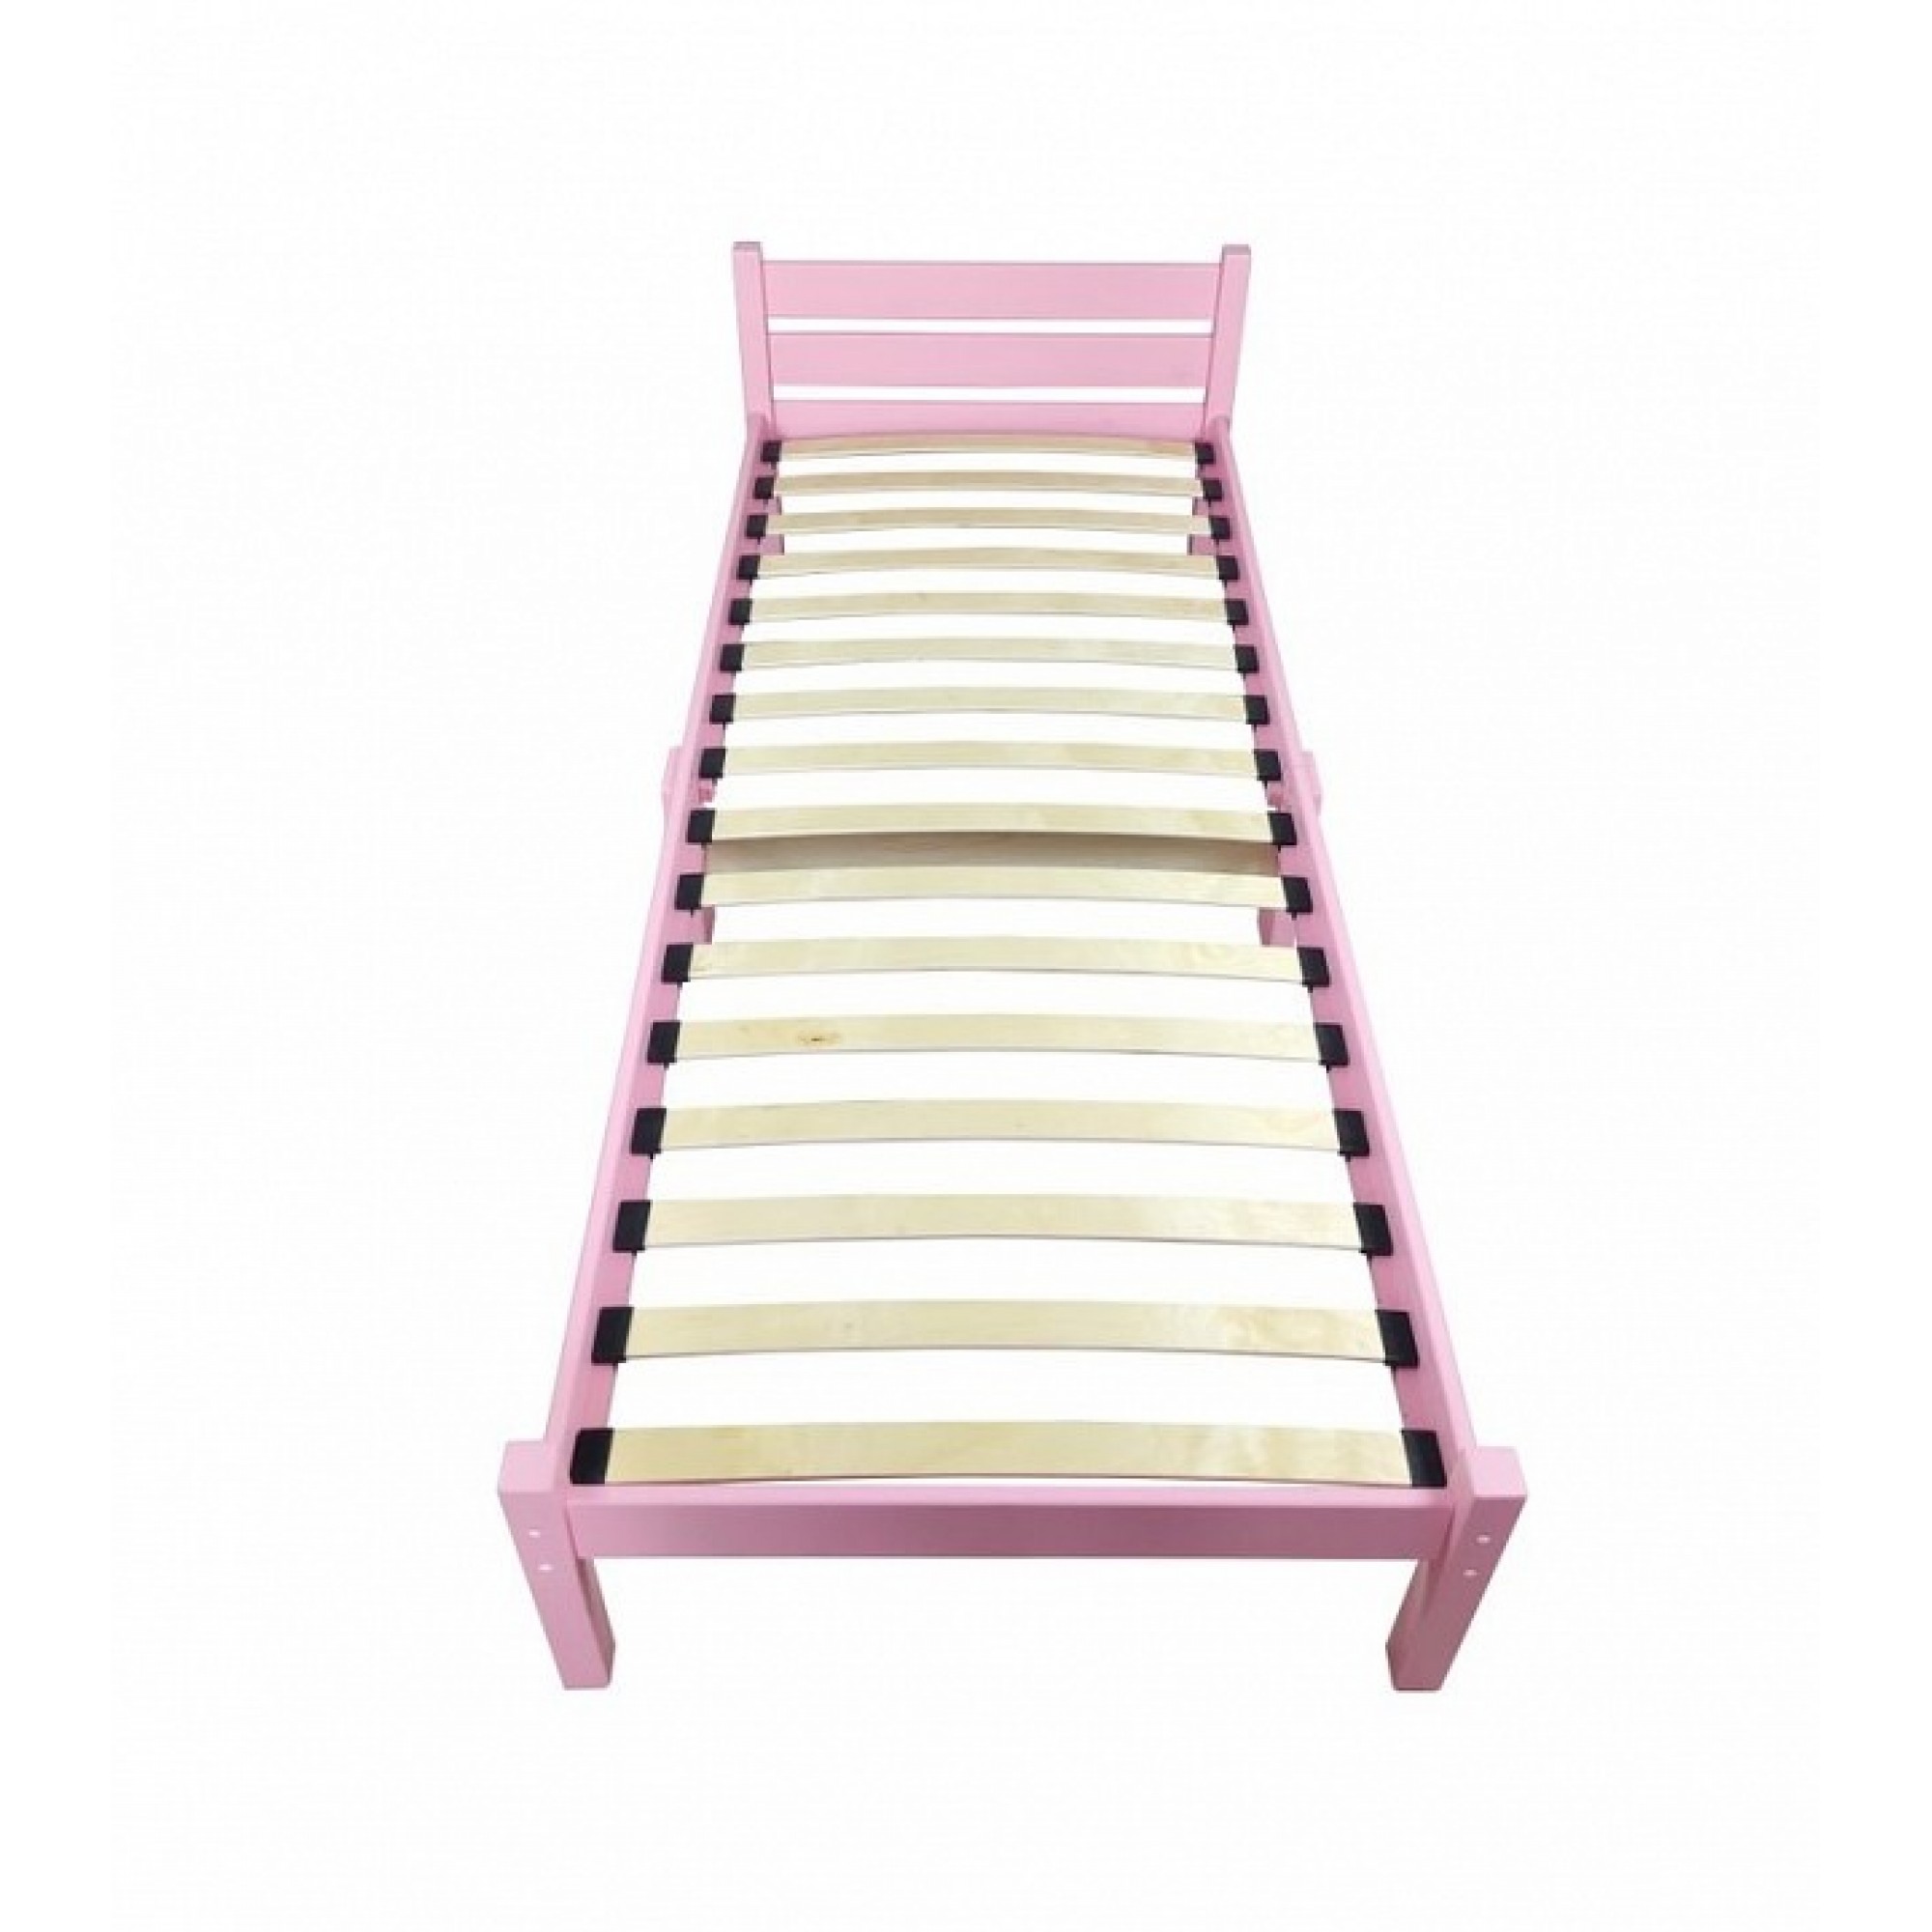 Кровать односпальная Компакт Орто 2000x900 розовый    SLR_ortokompakt90roz